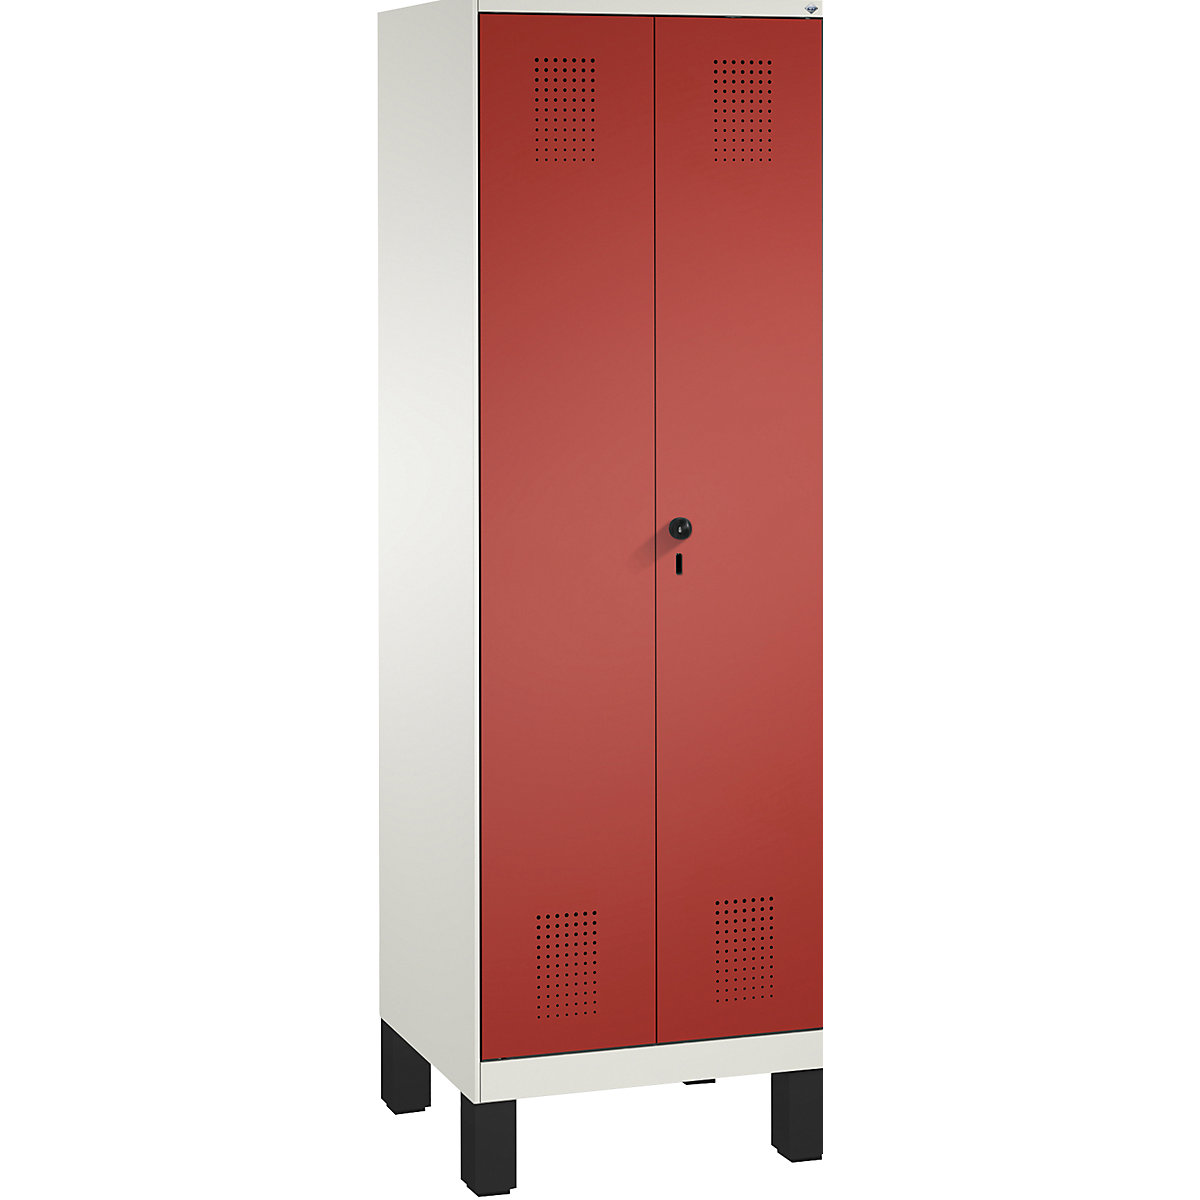 EVOLO takarítószer-/készüléktároló szekrény – C+P, rövidített válaszfal, 6 akasztó, rekeszek 2 x 300 mm, lábakkal, közlekedési fehér / tűzpiros-8